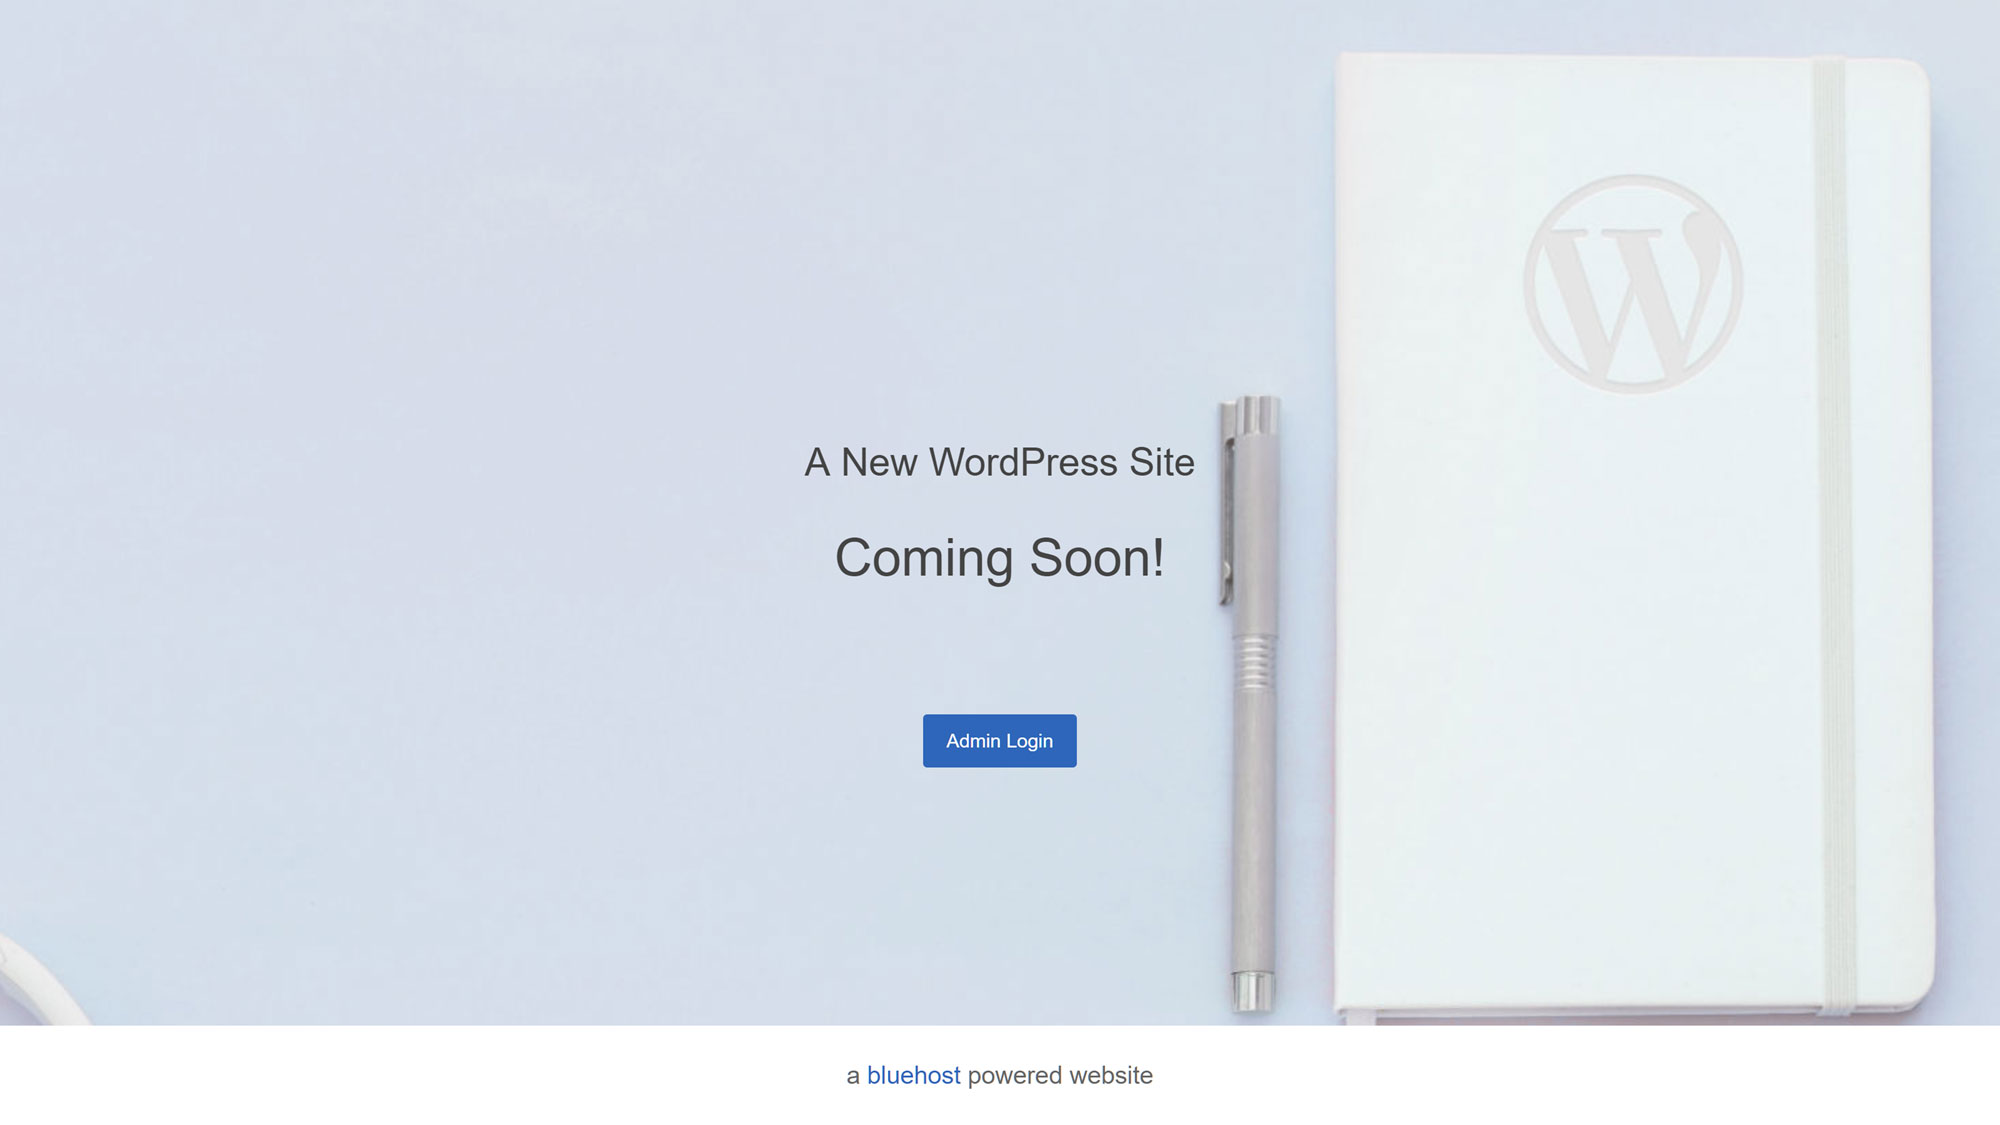 Помимо простоты установки WordPress, Bluehost отображает страницу, которая скоро появится для вашего нового сайта